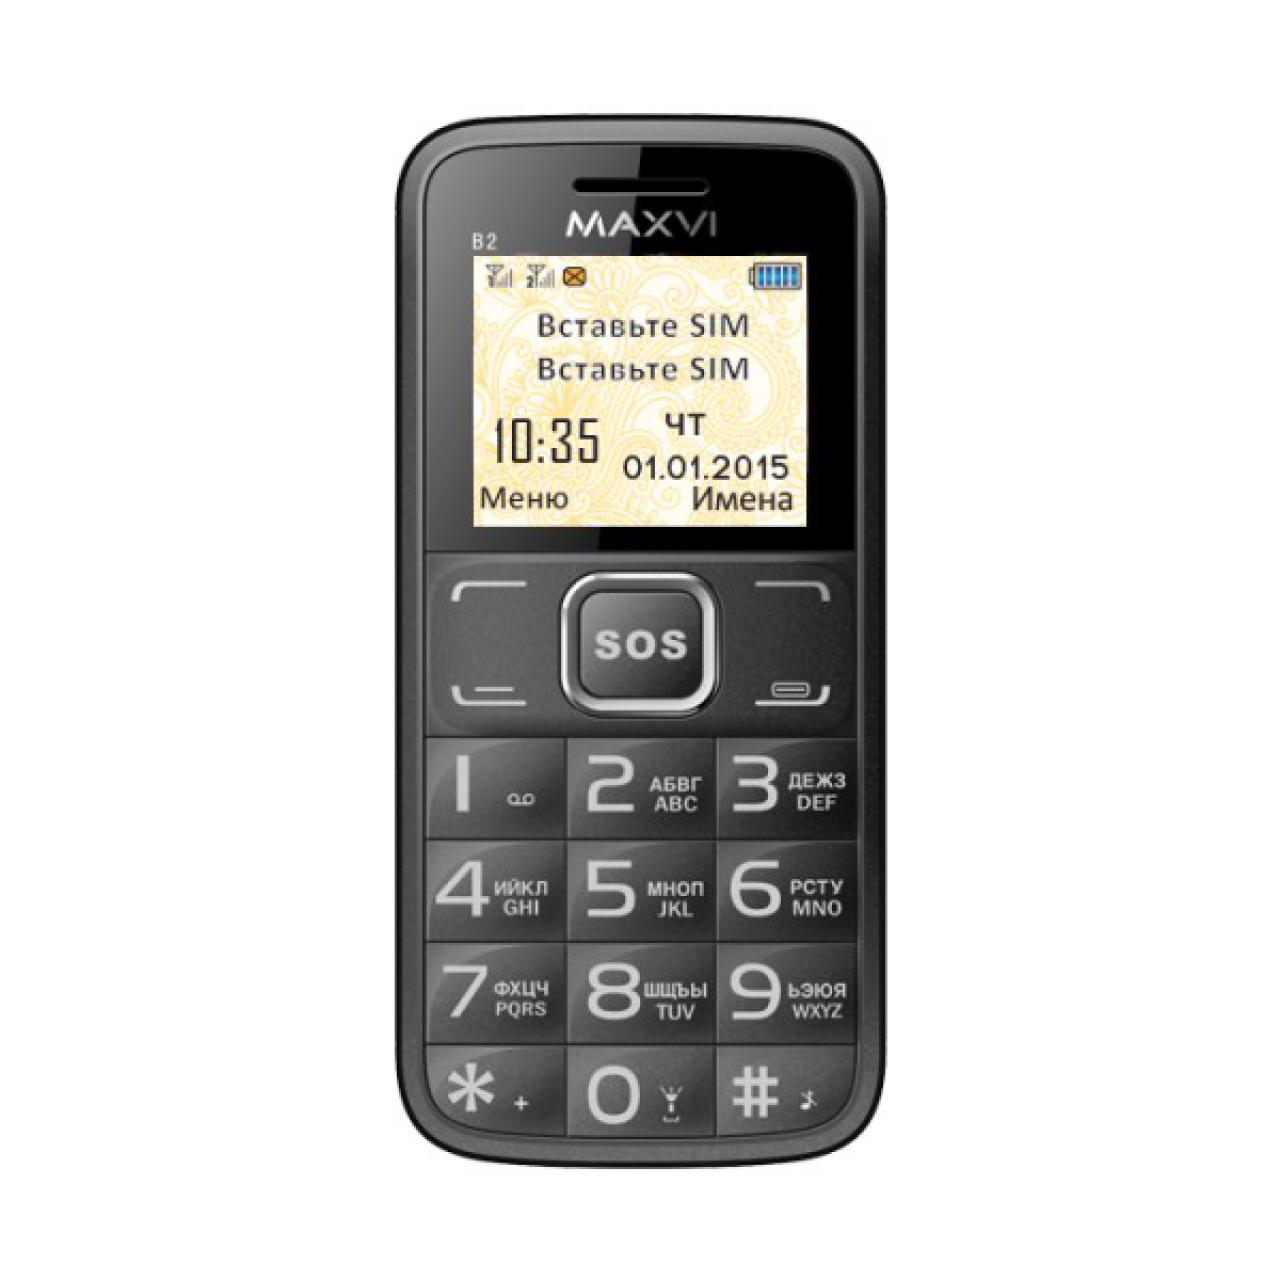 Мобильный телефон магнитогорск. Мобильный телефон Maxvi b2 Black. Мобильный телефон Maxvi b2 coffe. Maxvi b2 Coffee (2 SIM). Maxvi b2 Grey.